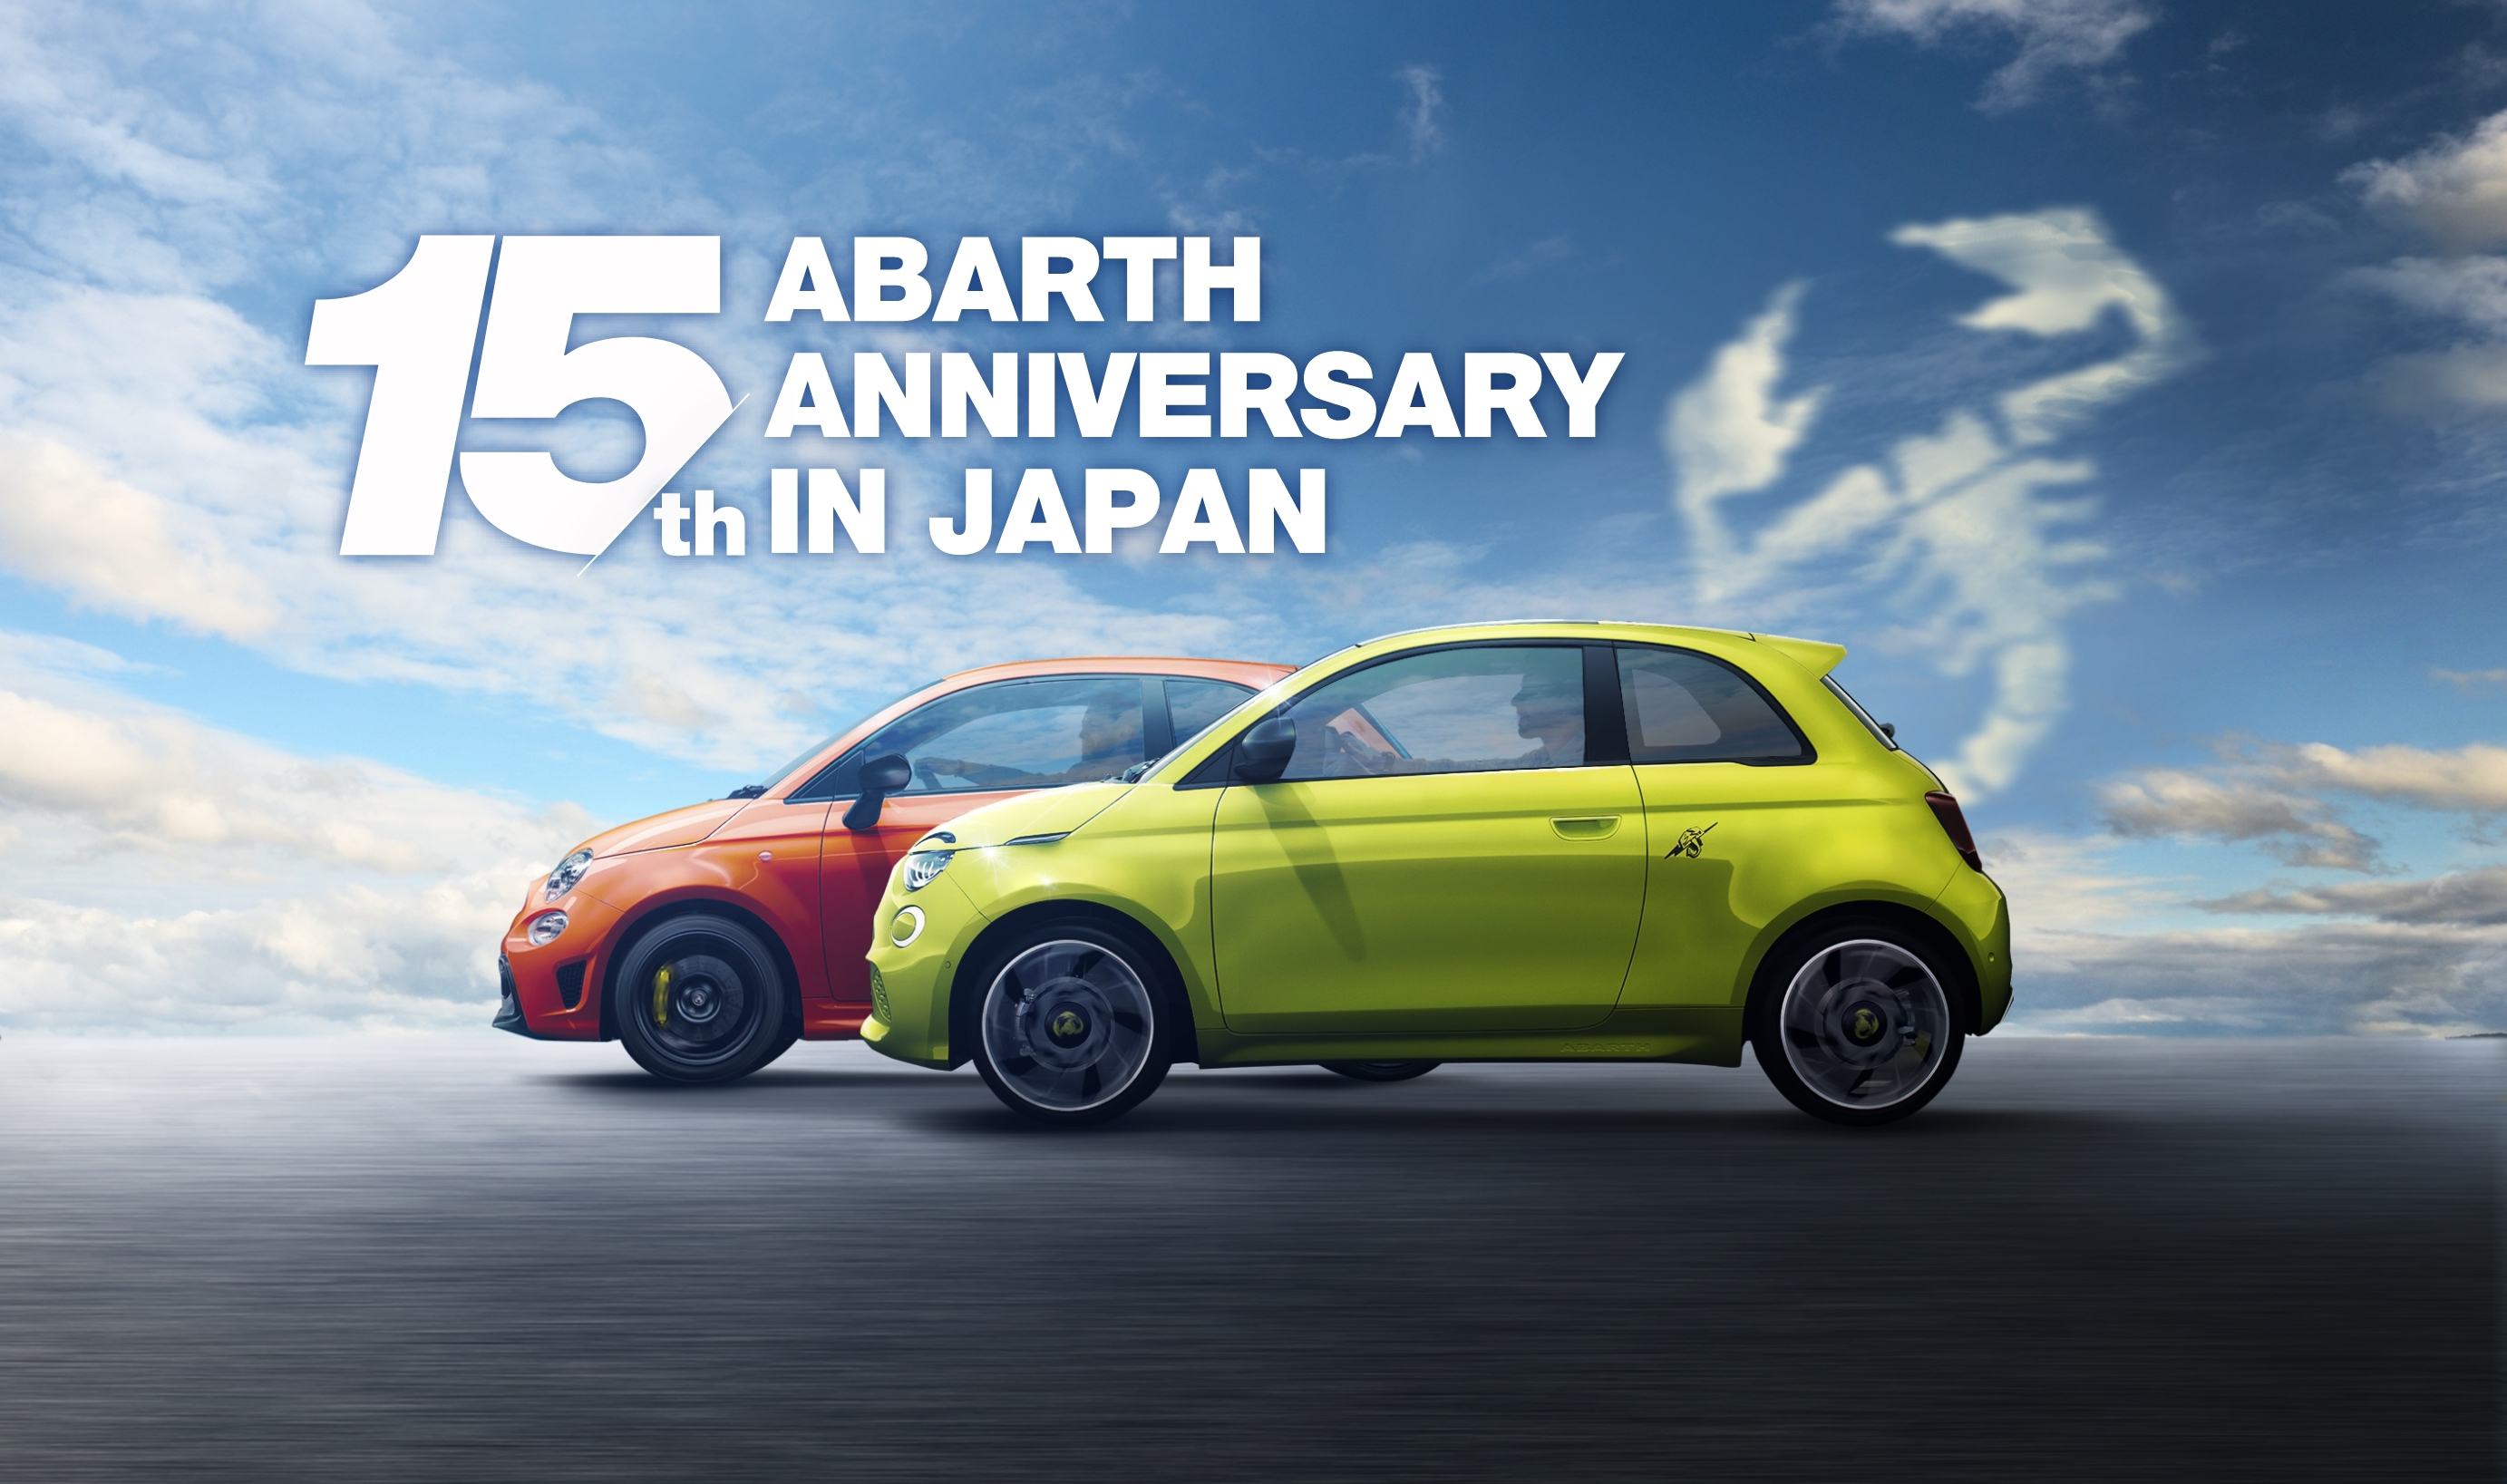 アバルト・ブランド 「ABARTH 15th ANNIVERSARY in JAPAN フェア&キャンペーン」を実施